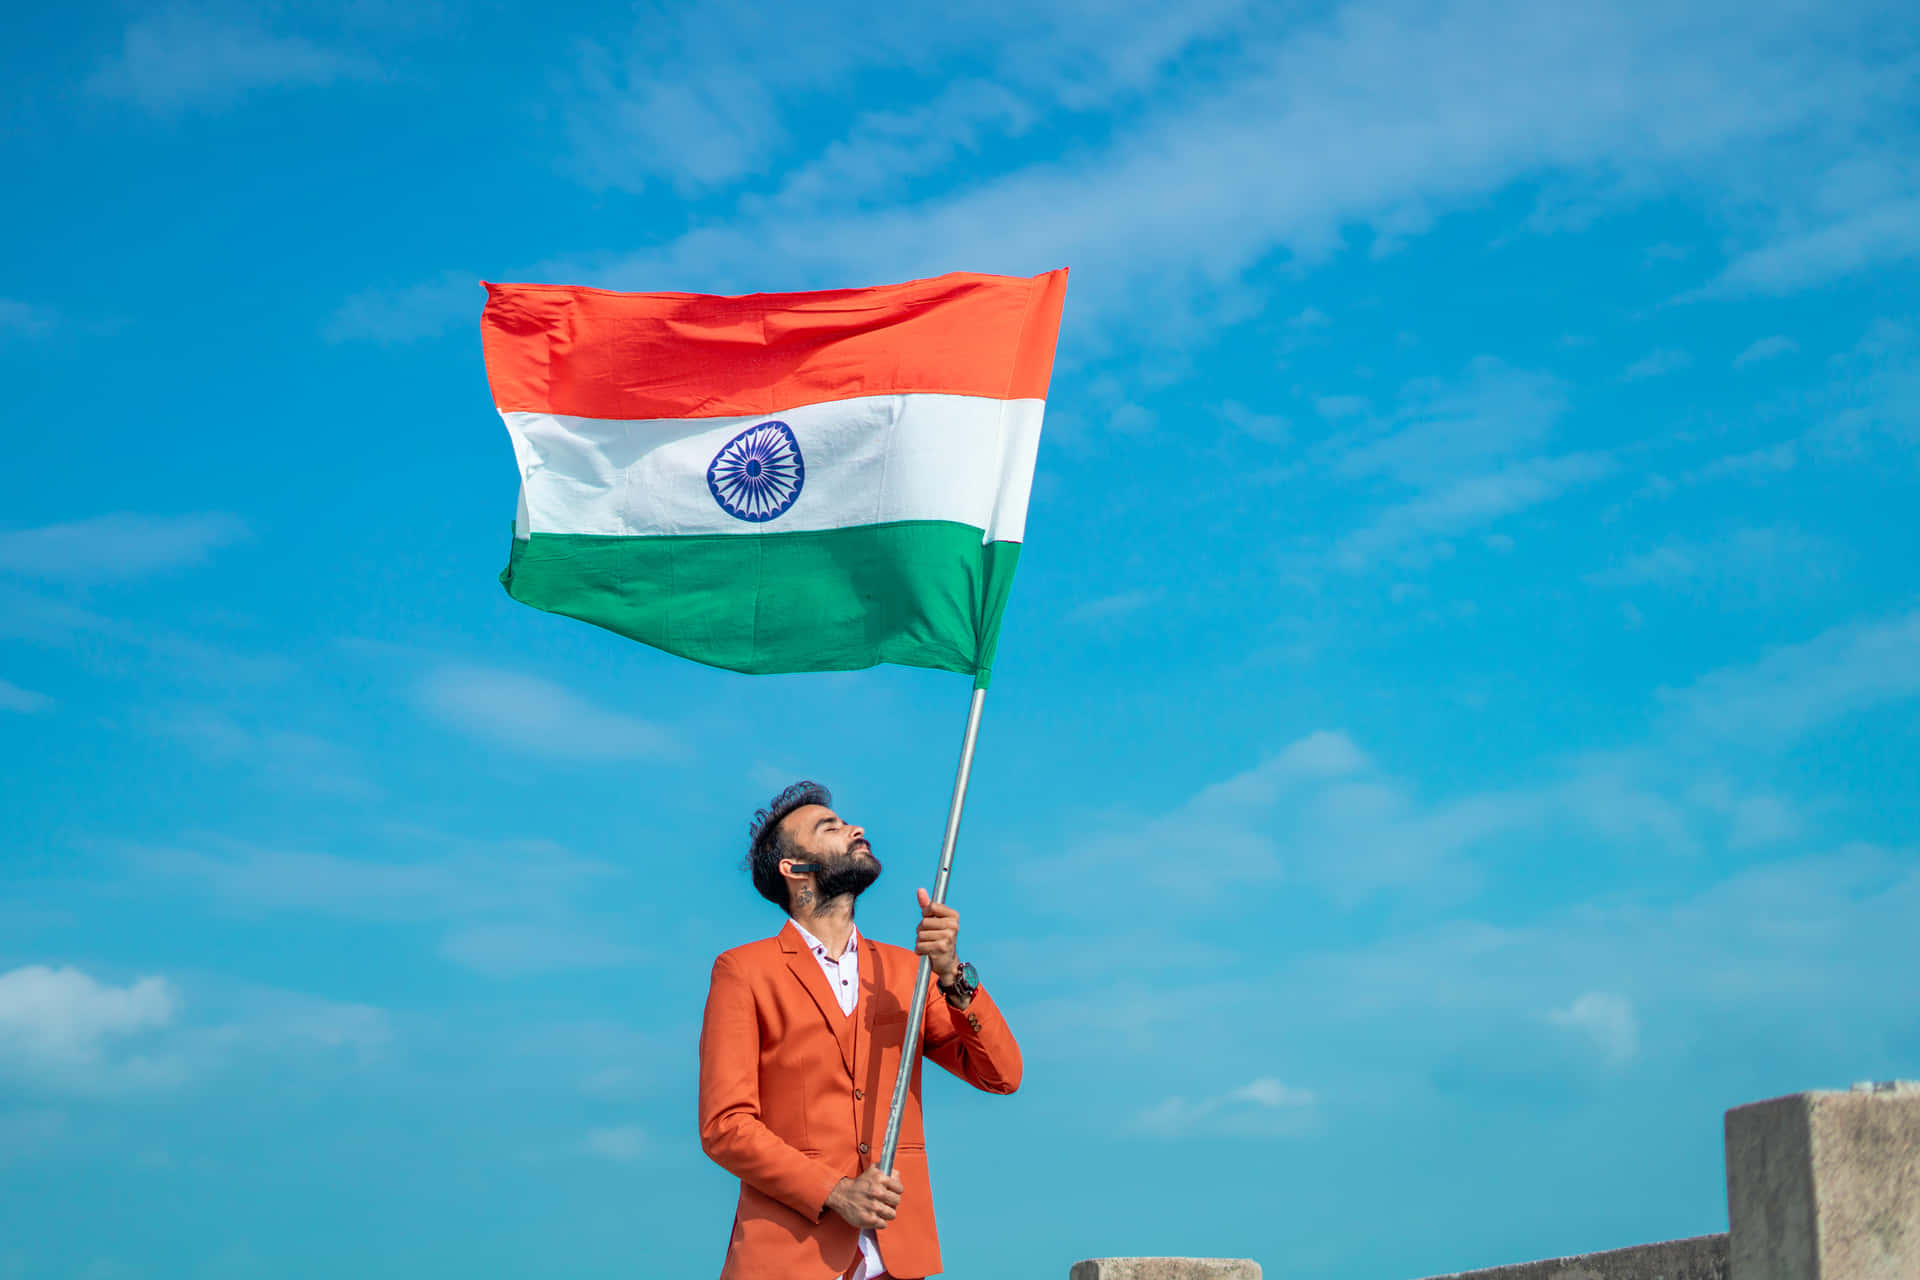 Banderade India: Un Emblema De Orgullo.